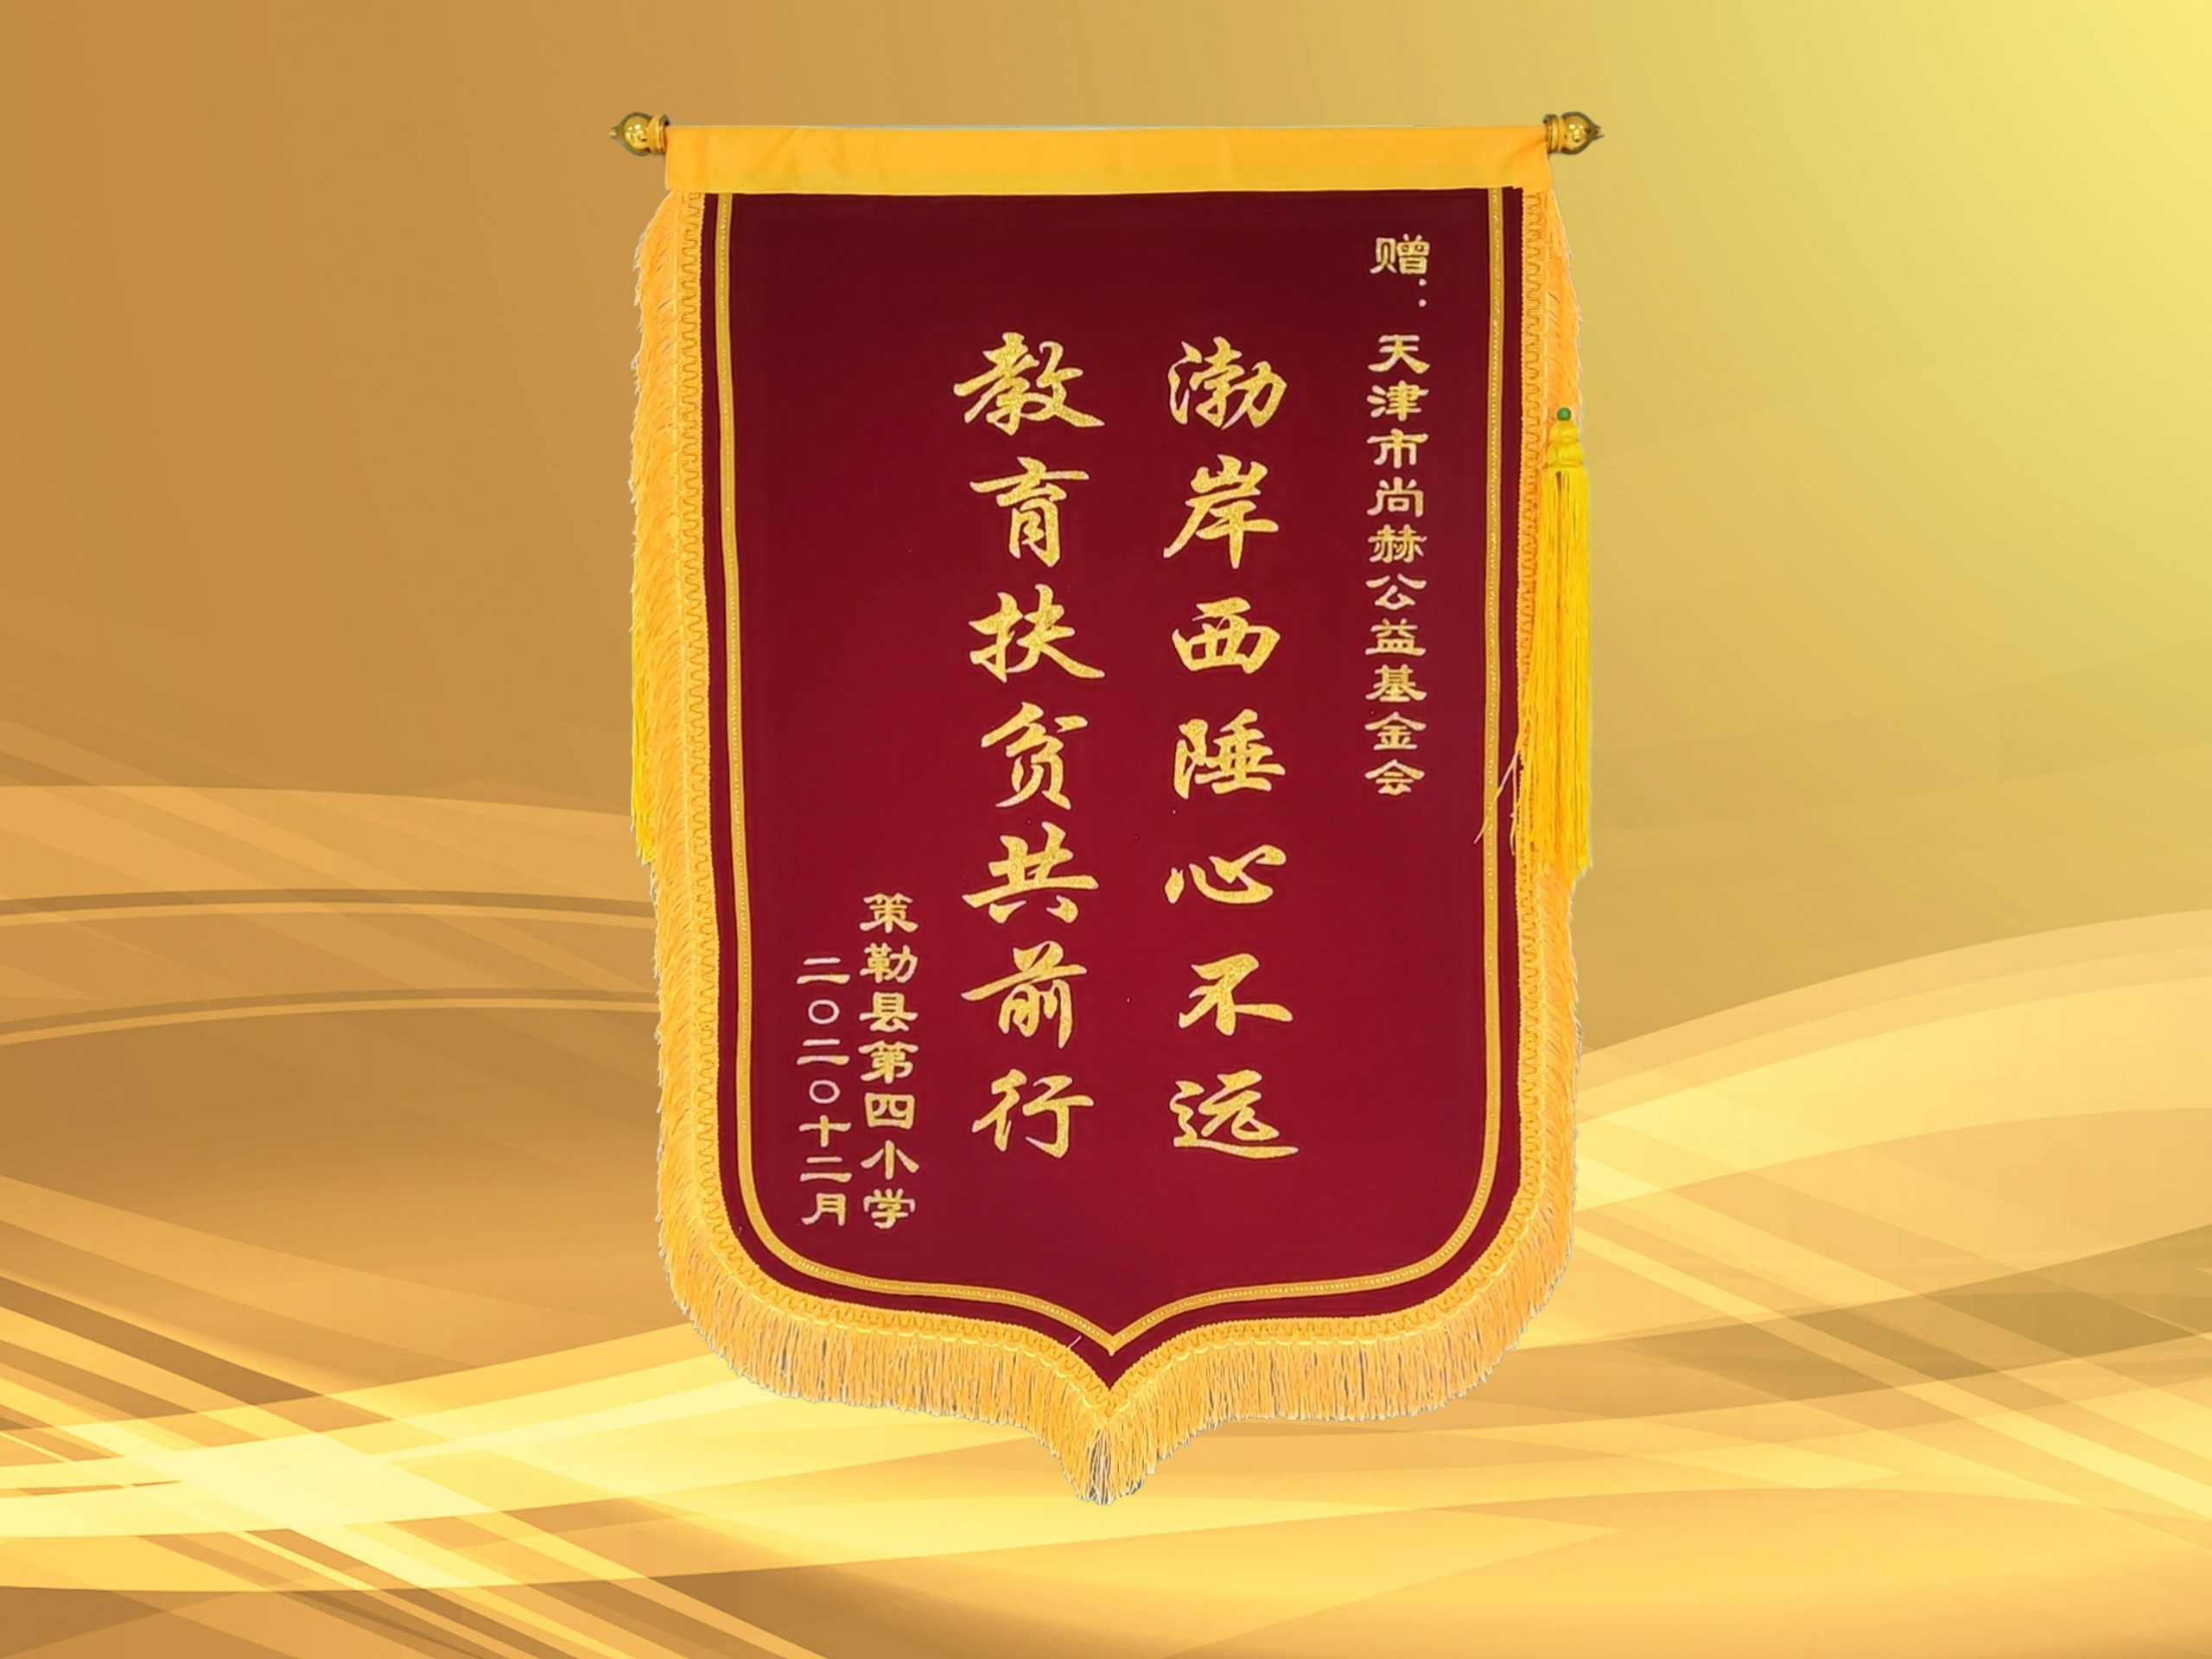 2021年3月-正规的十大网投实体平台(中国)有限公司公益基金会收到新疆策勒县第四小学赠予的锦旗